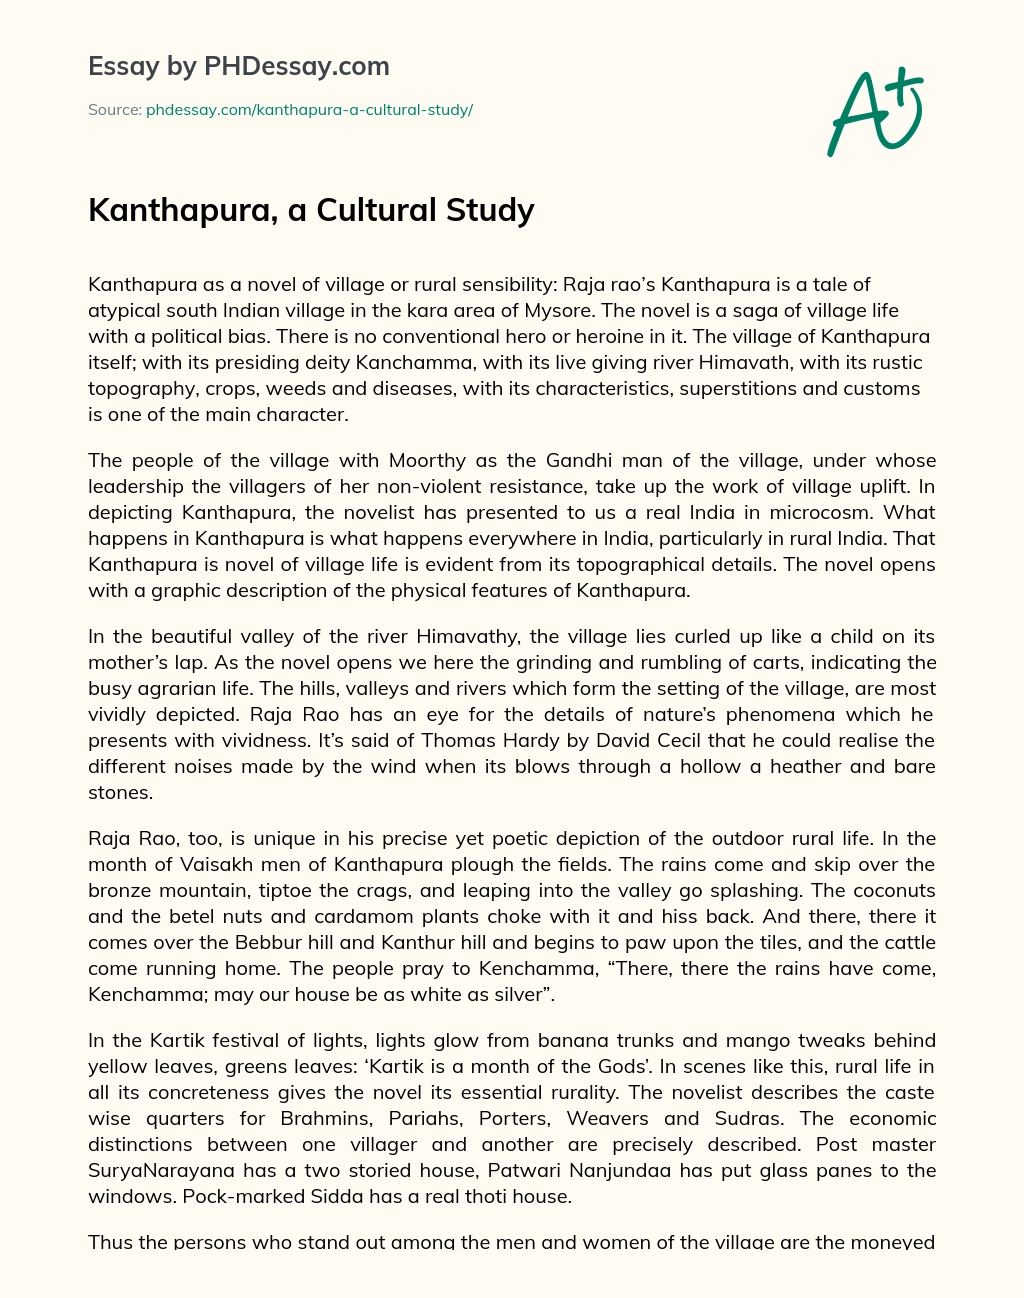 Kanthapura, a Cultural Study essay